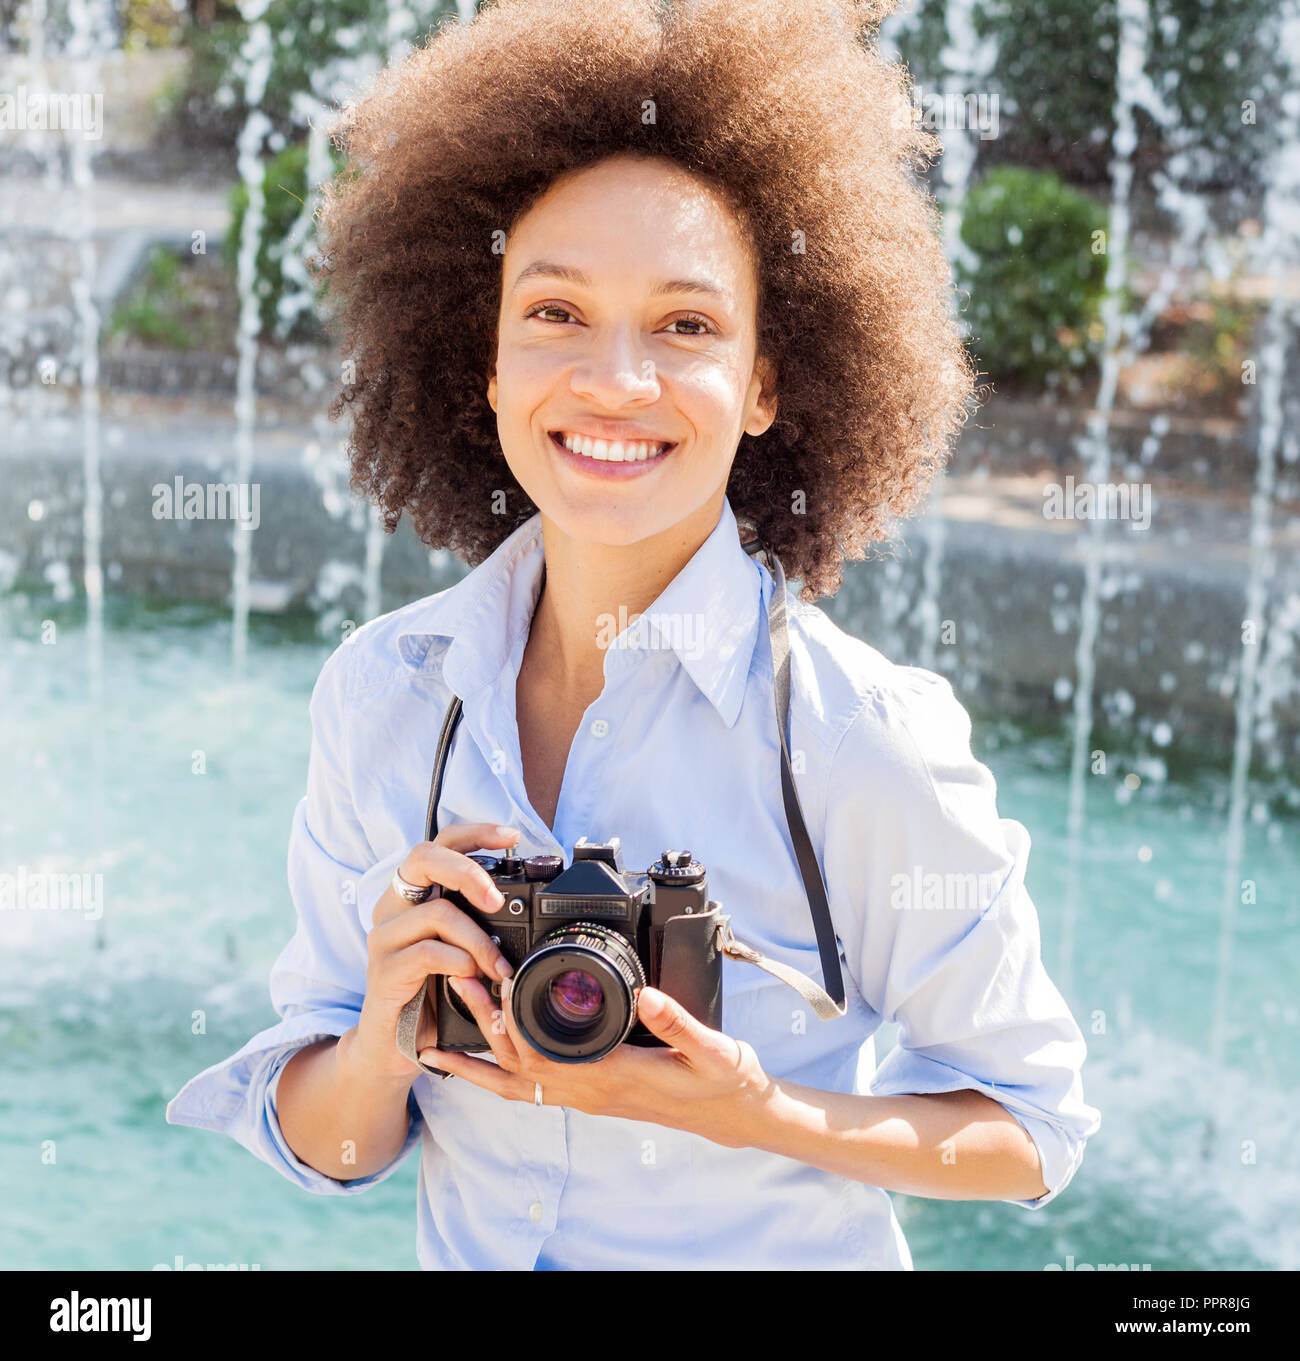 Portrait de femme noire charme rétro avec appareil photo, femme photographe  outdoor,coiffure afro, porte des vêtements décontractés, looking at camera  Photo Stock - Alamy